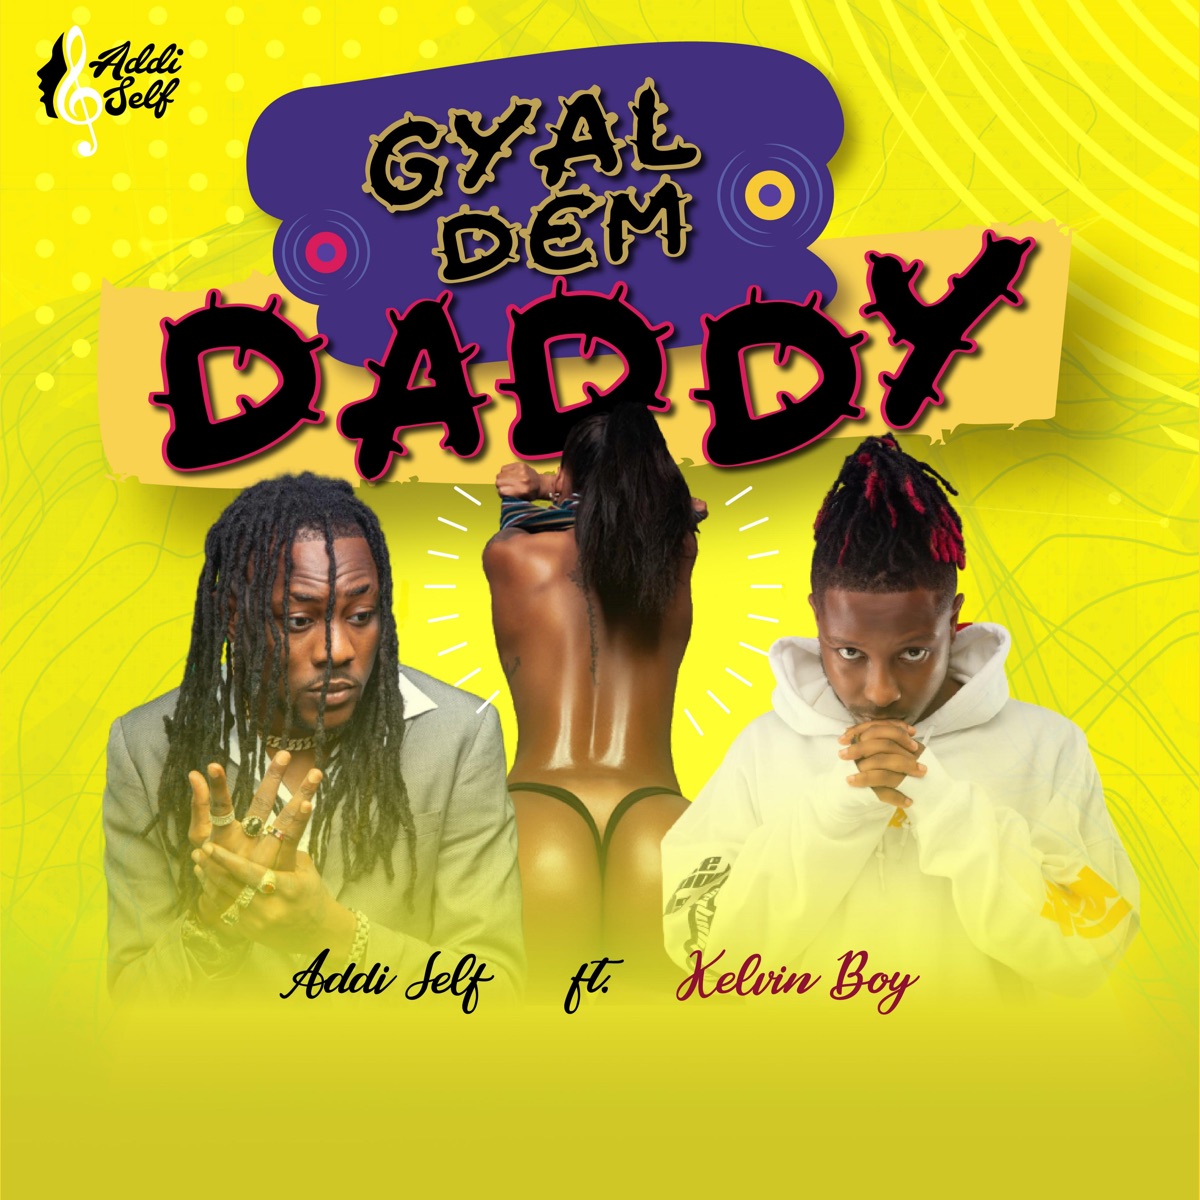 Addi Self - Gyal Dem Daddy ft. Kelvyn Boy